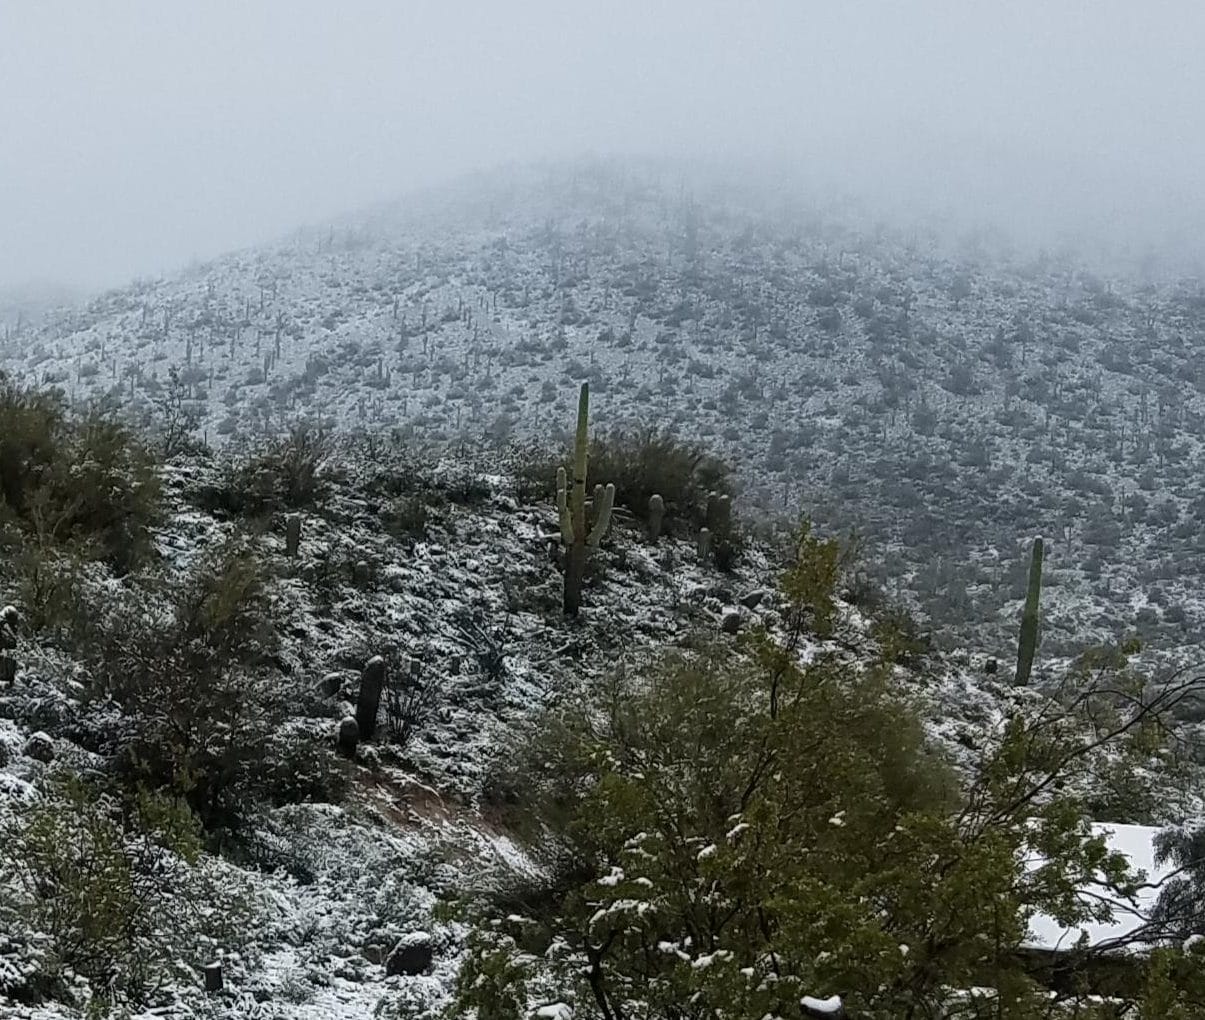 Snow in Arizona